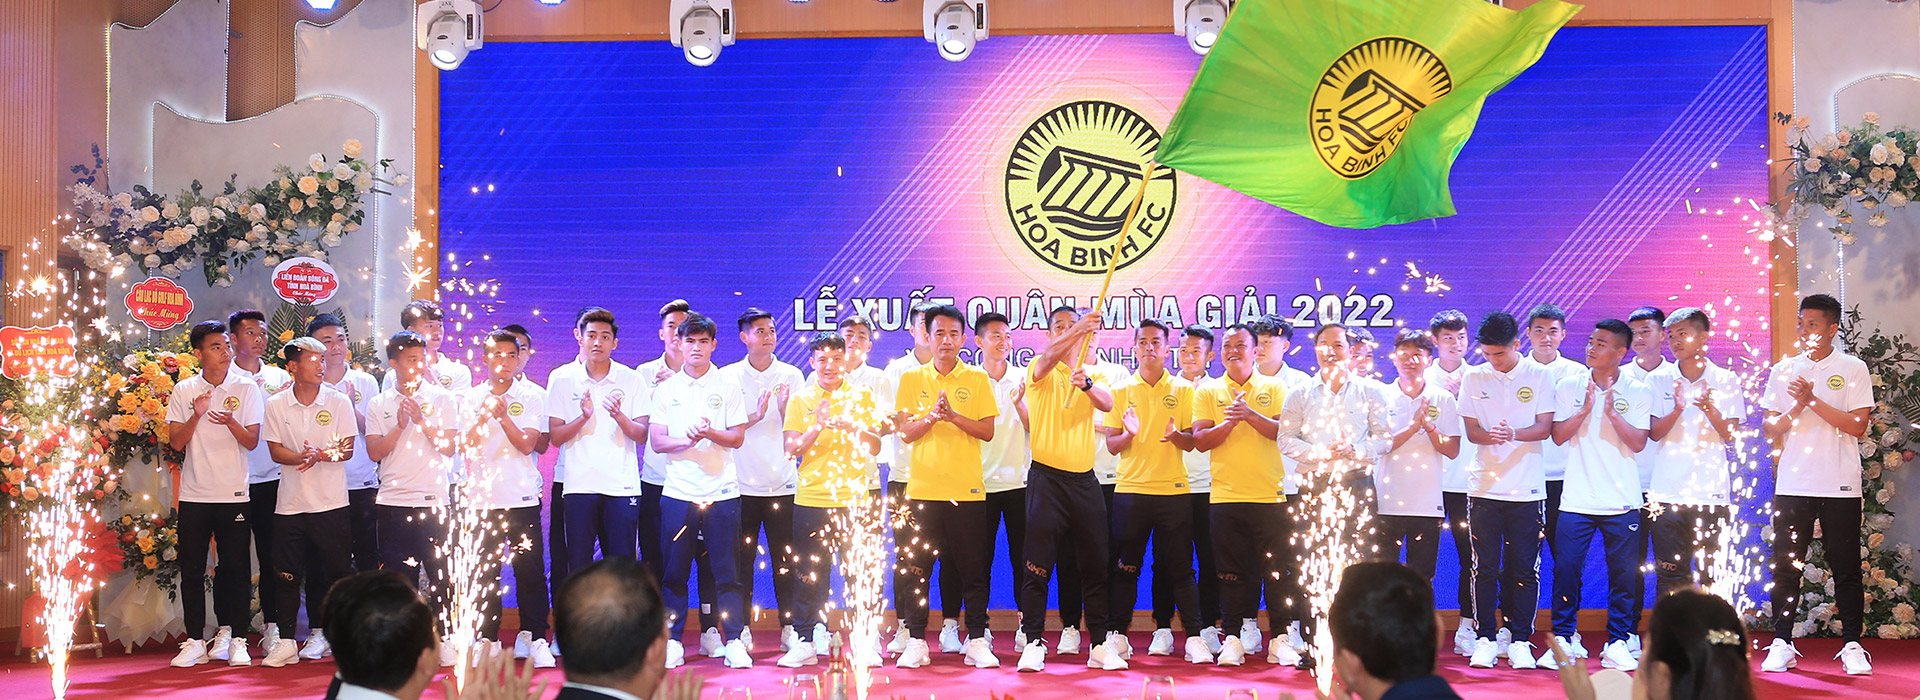 Hòa Bình FC - Xuất quân 2022